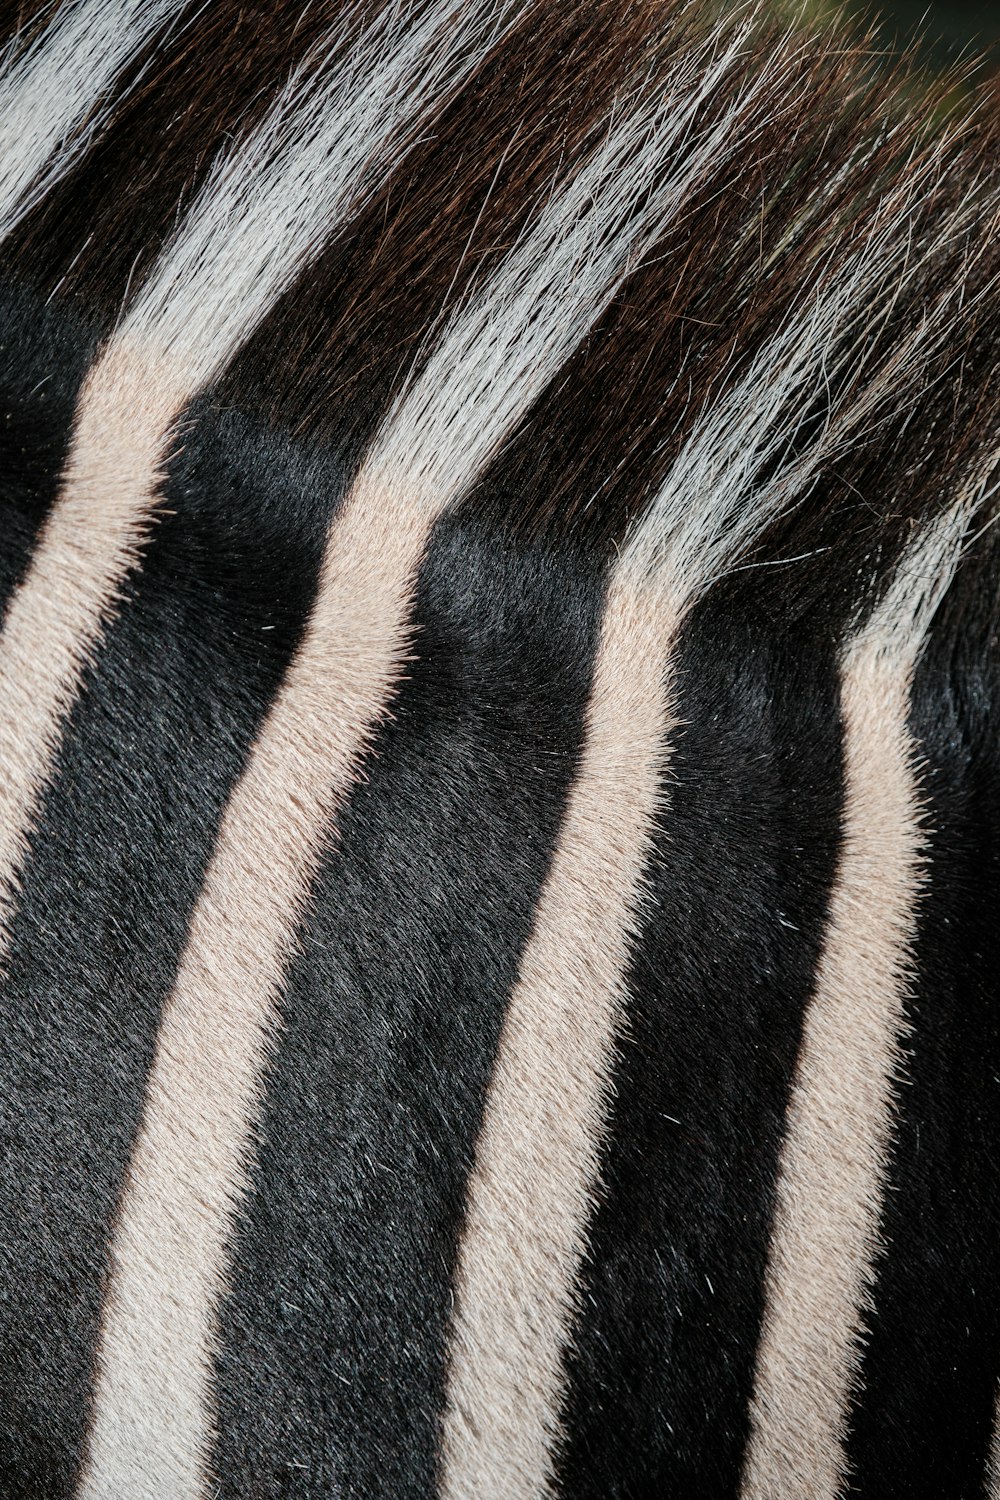 a close up of a zebra's mane